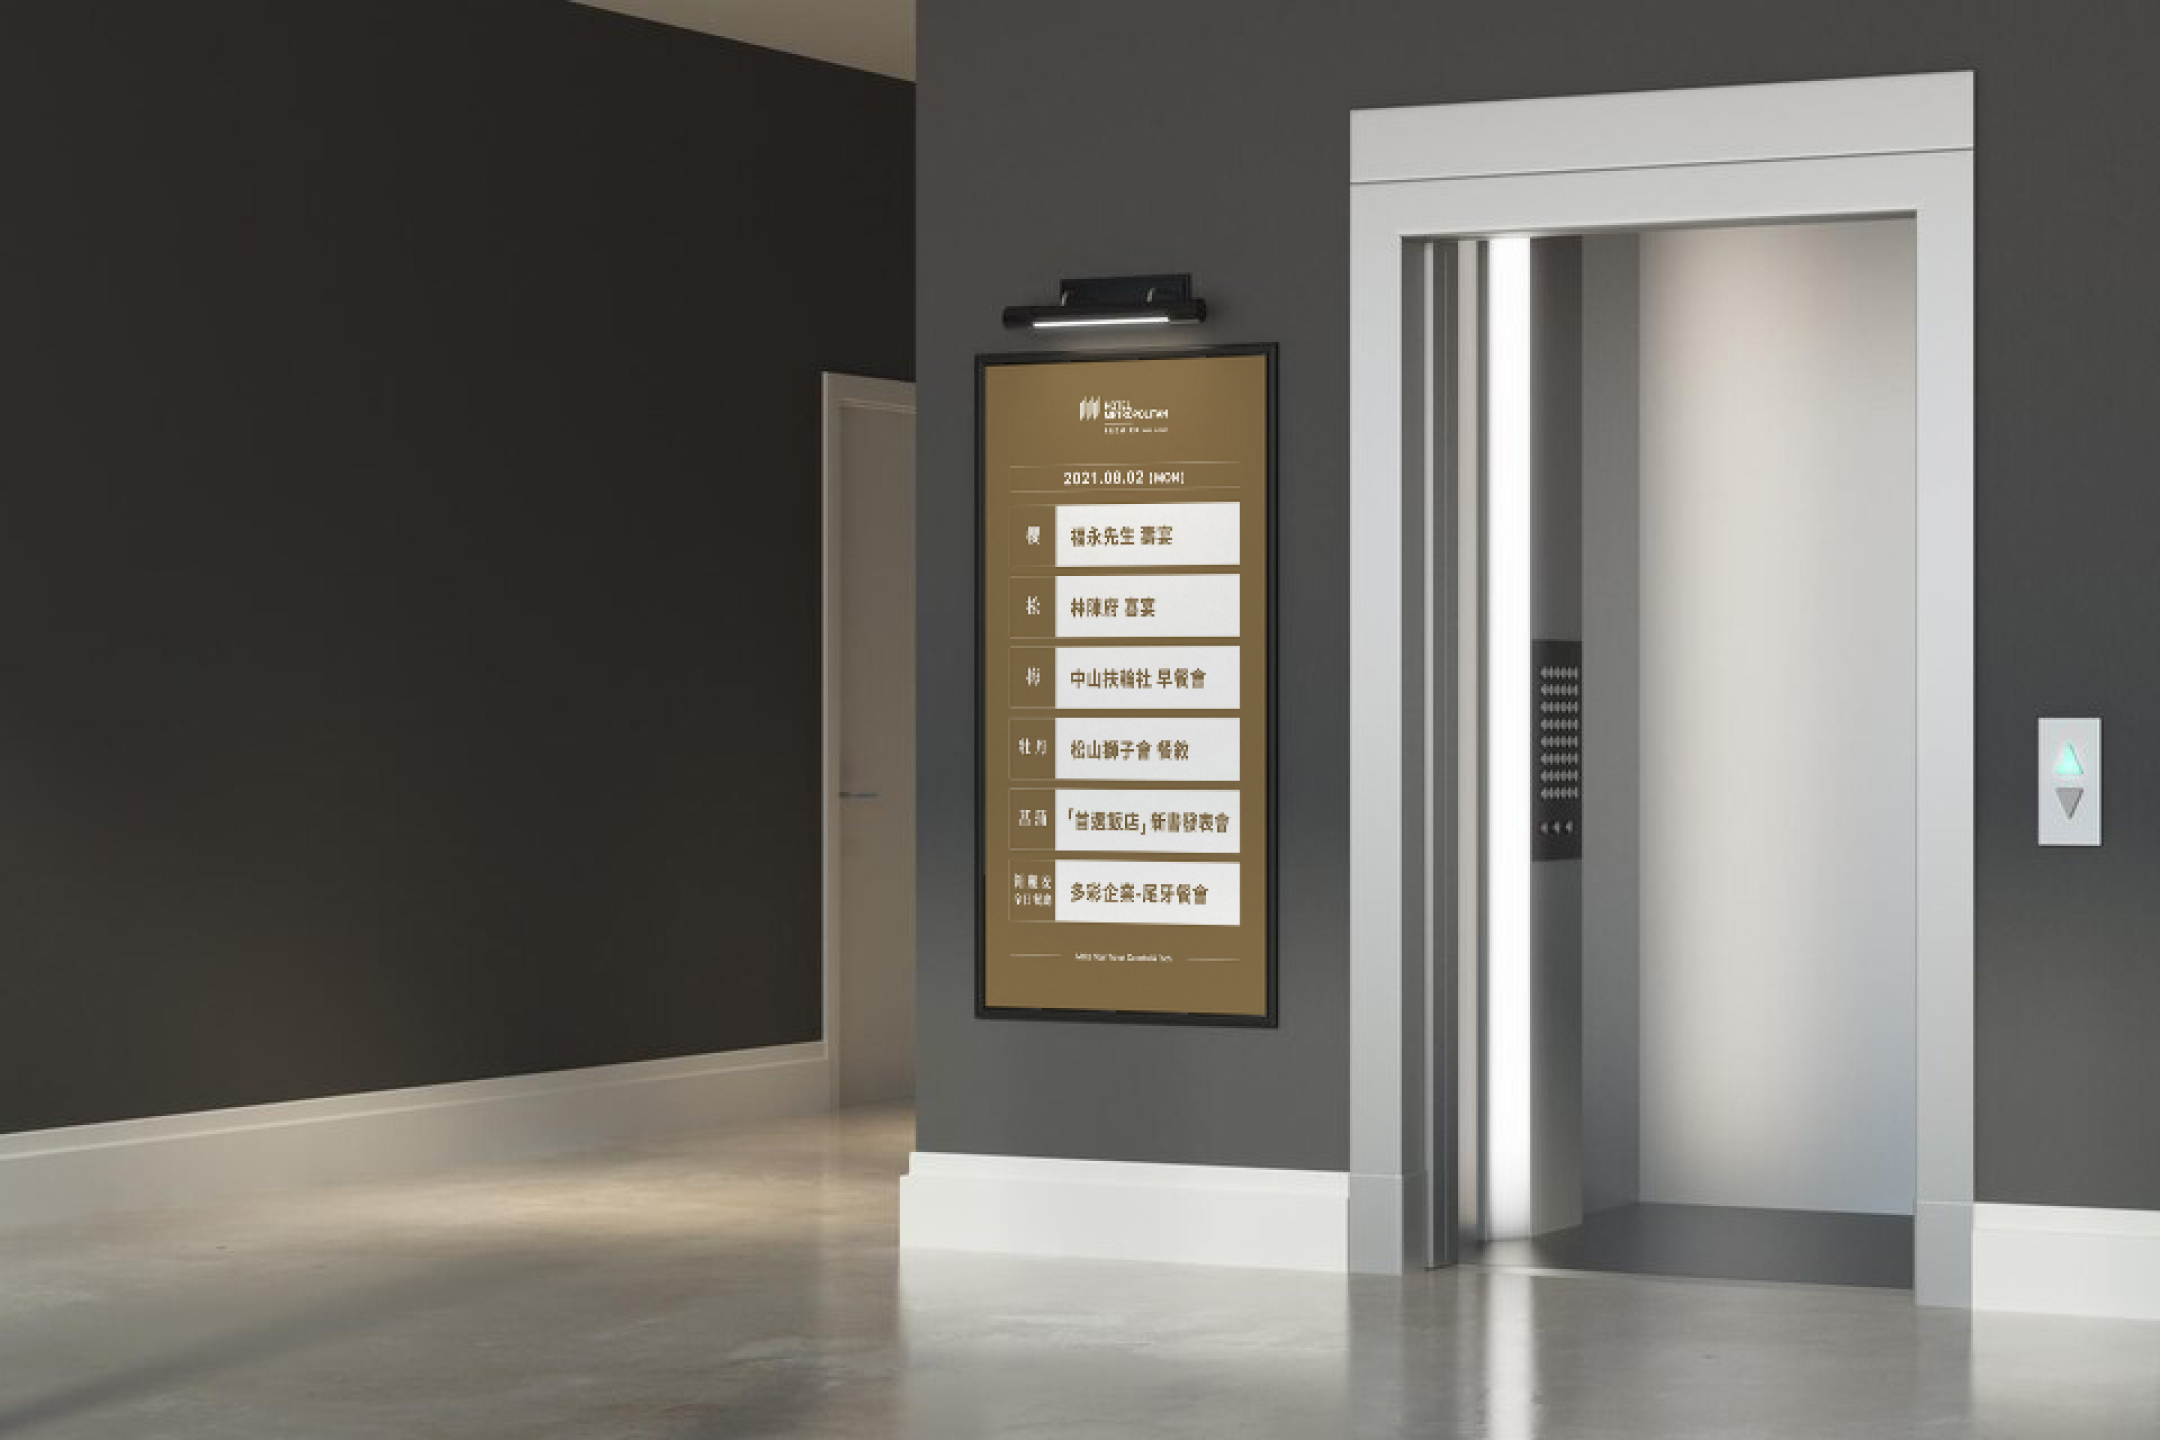 eButler Signage 電子看板 - 位於電梯出入口的電子看板